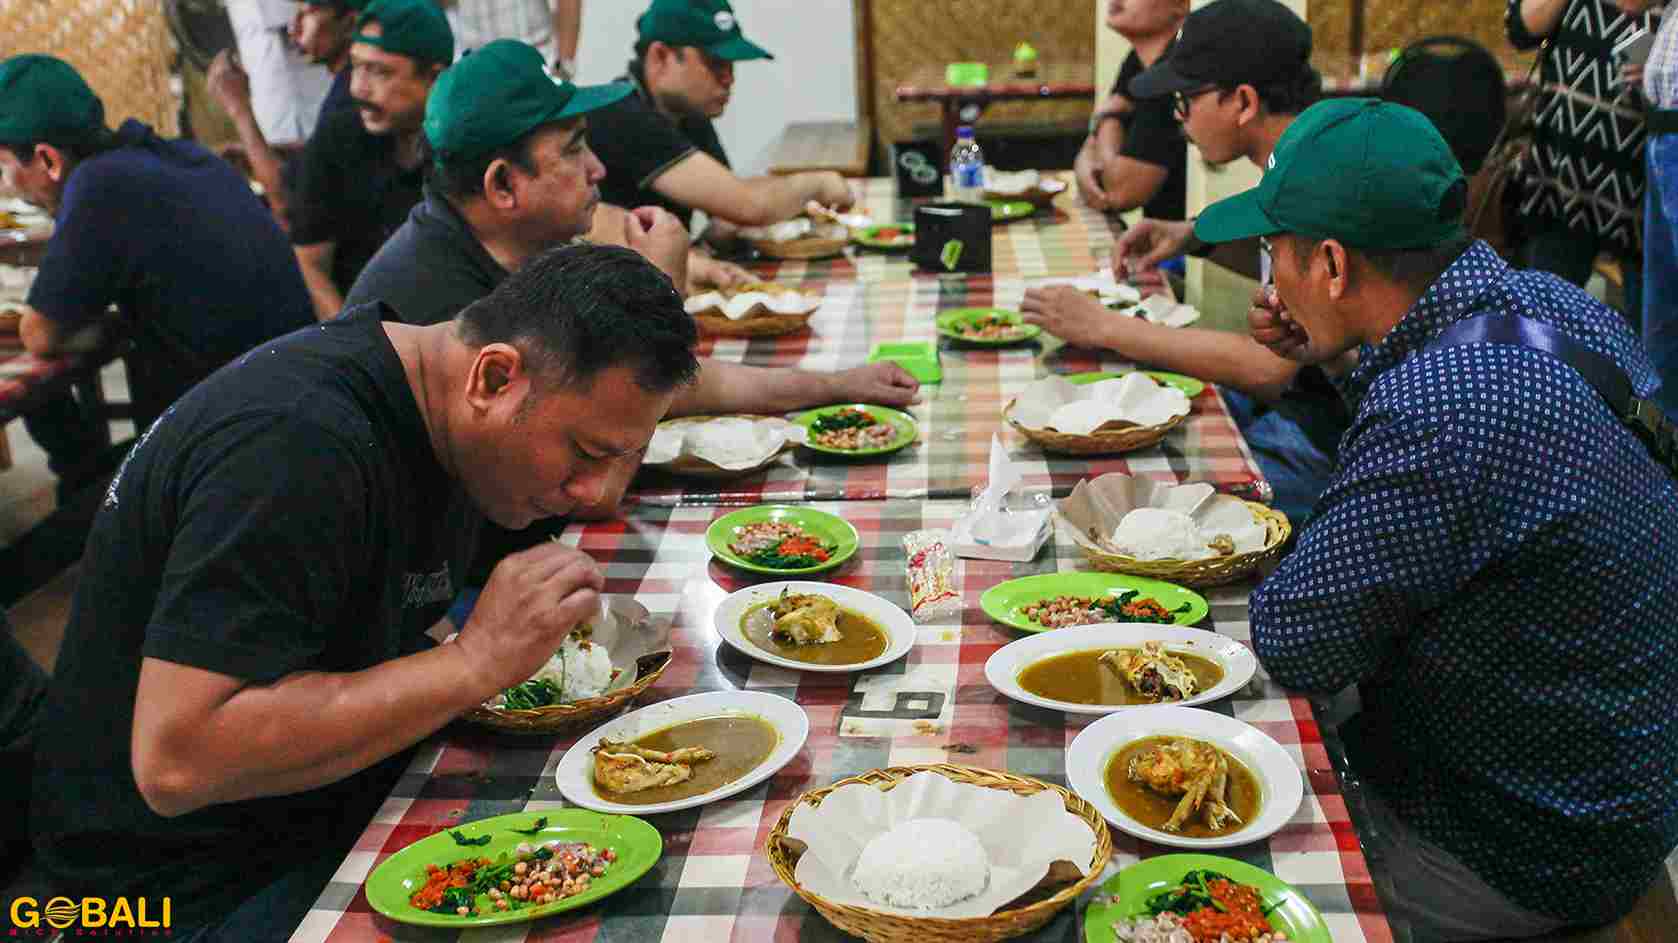 PP Semarang - Dinner Jimbaran